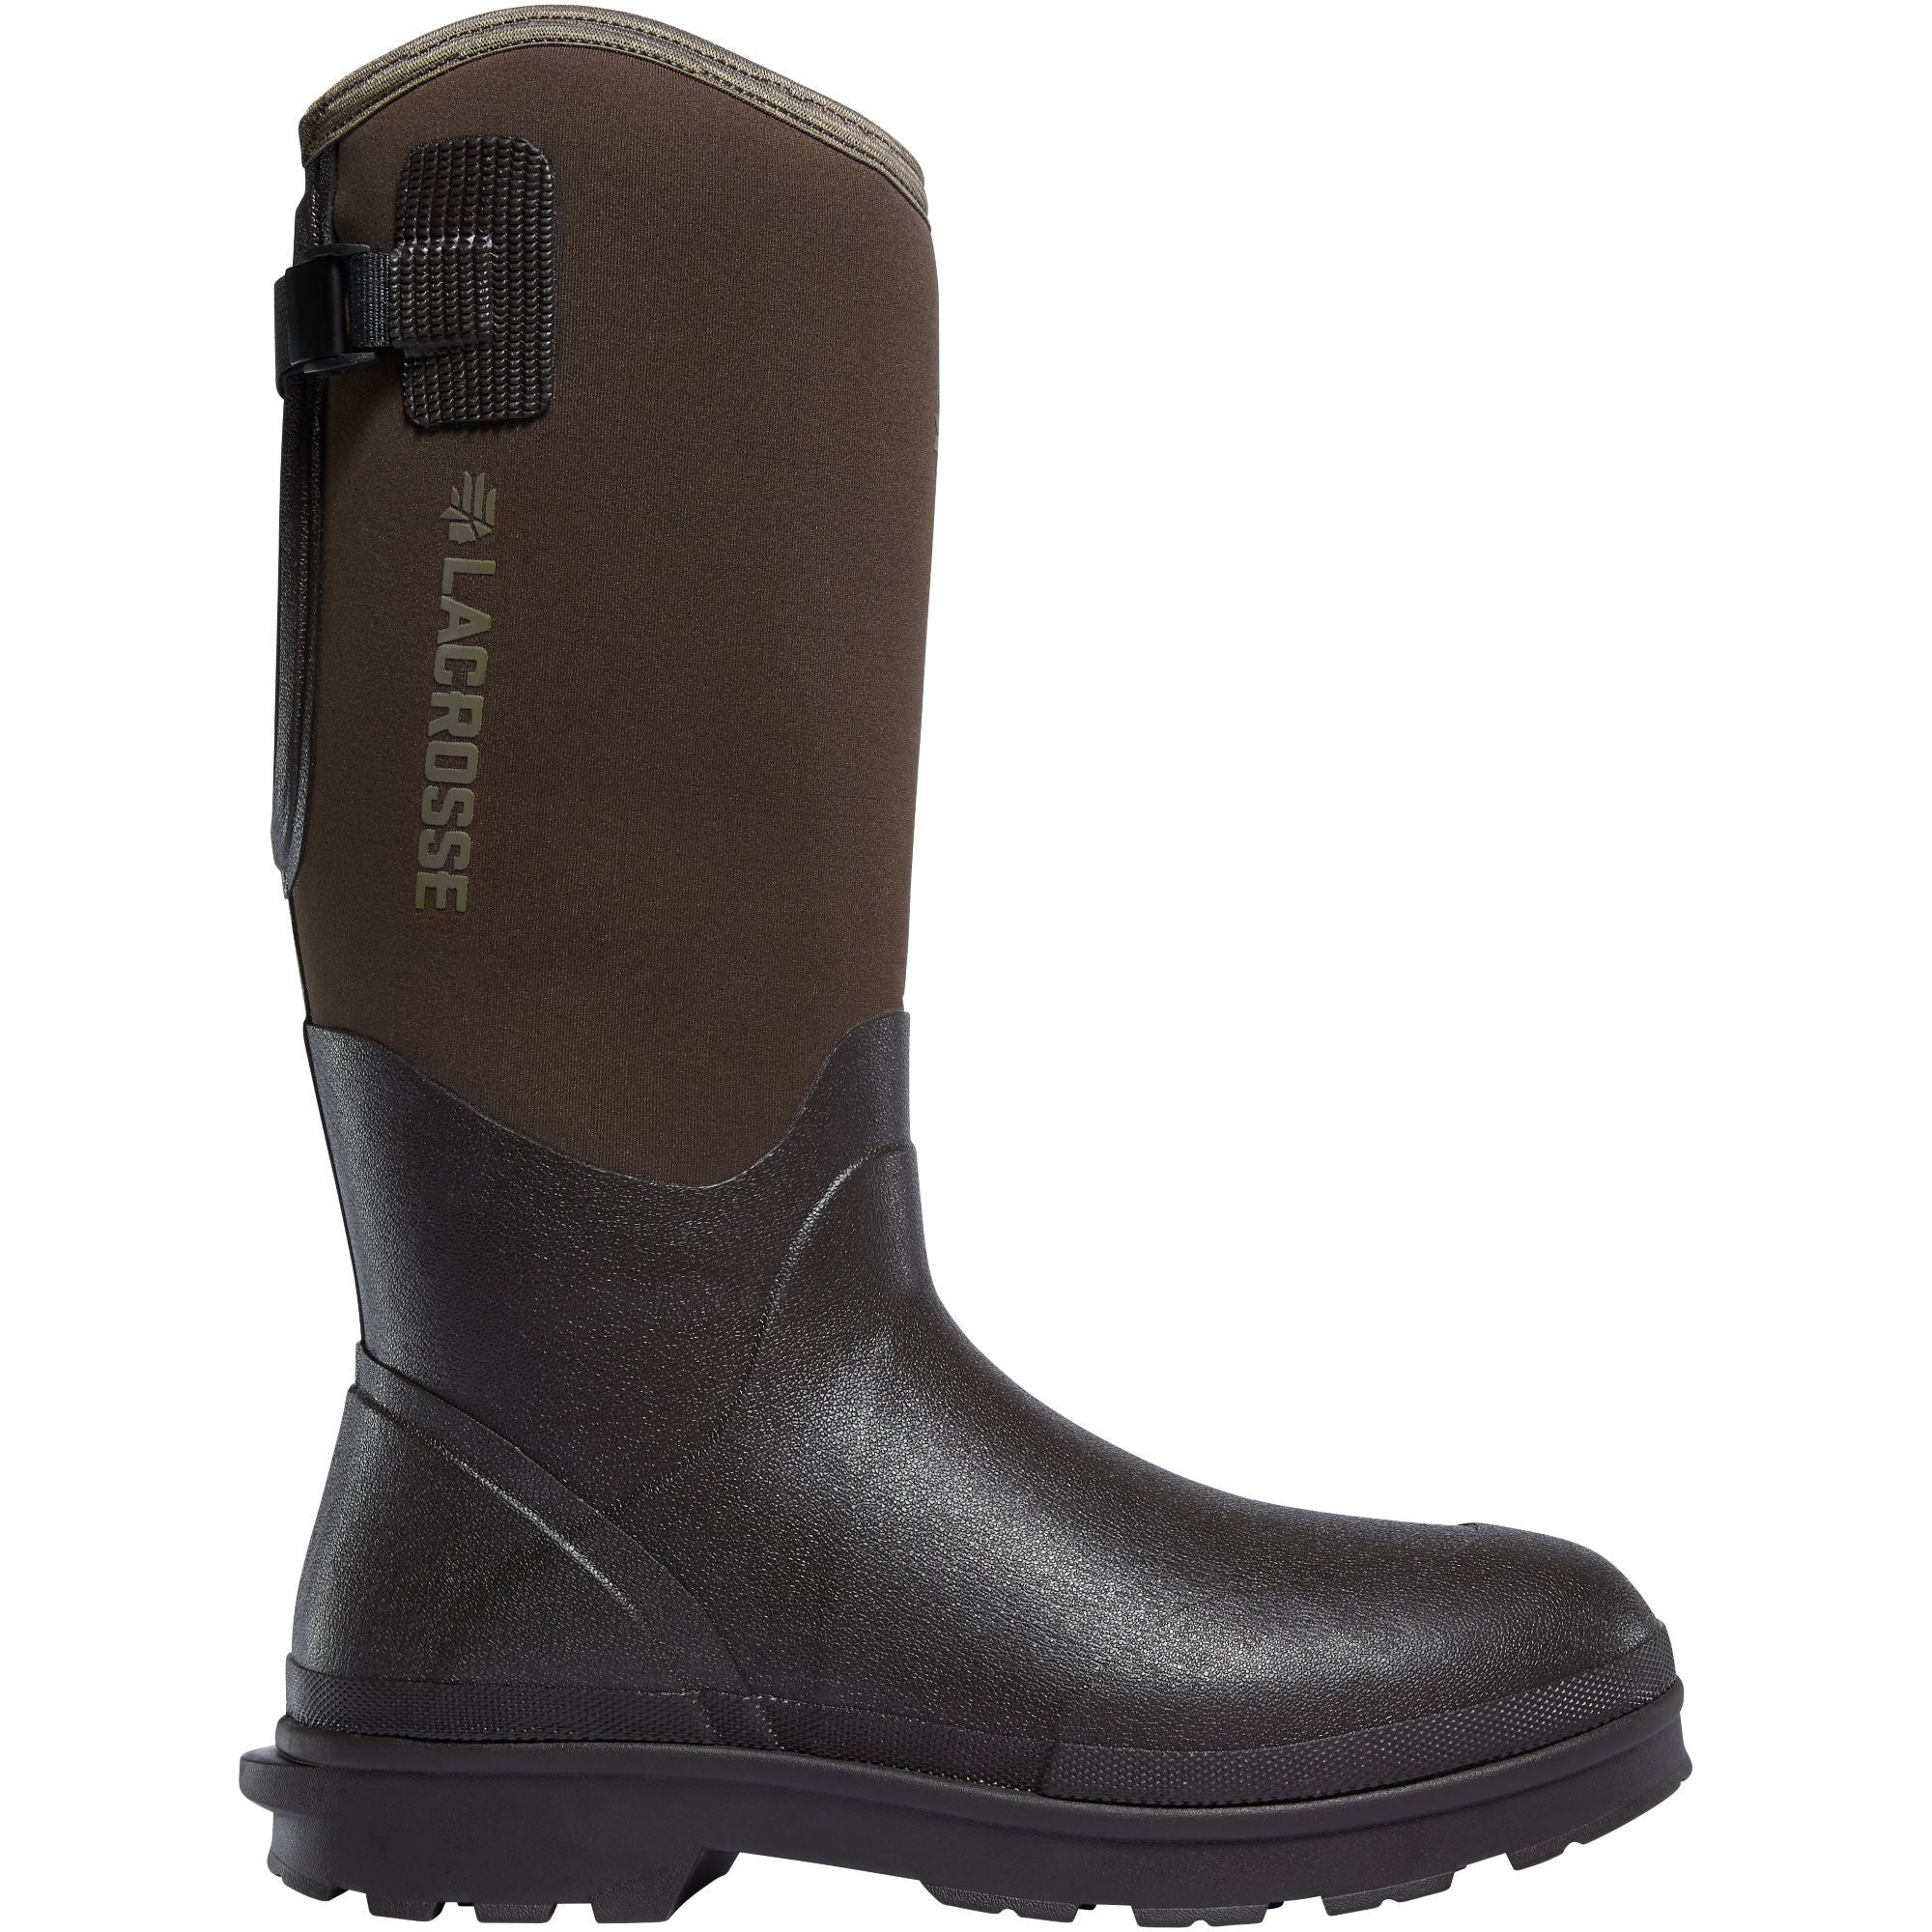 LaCrosse Men's Alpha Range 14" Ins Rubber Work Boot - Brown - 602248 7 / Brown - Overlook Boots